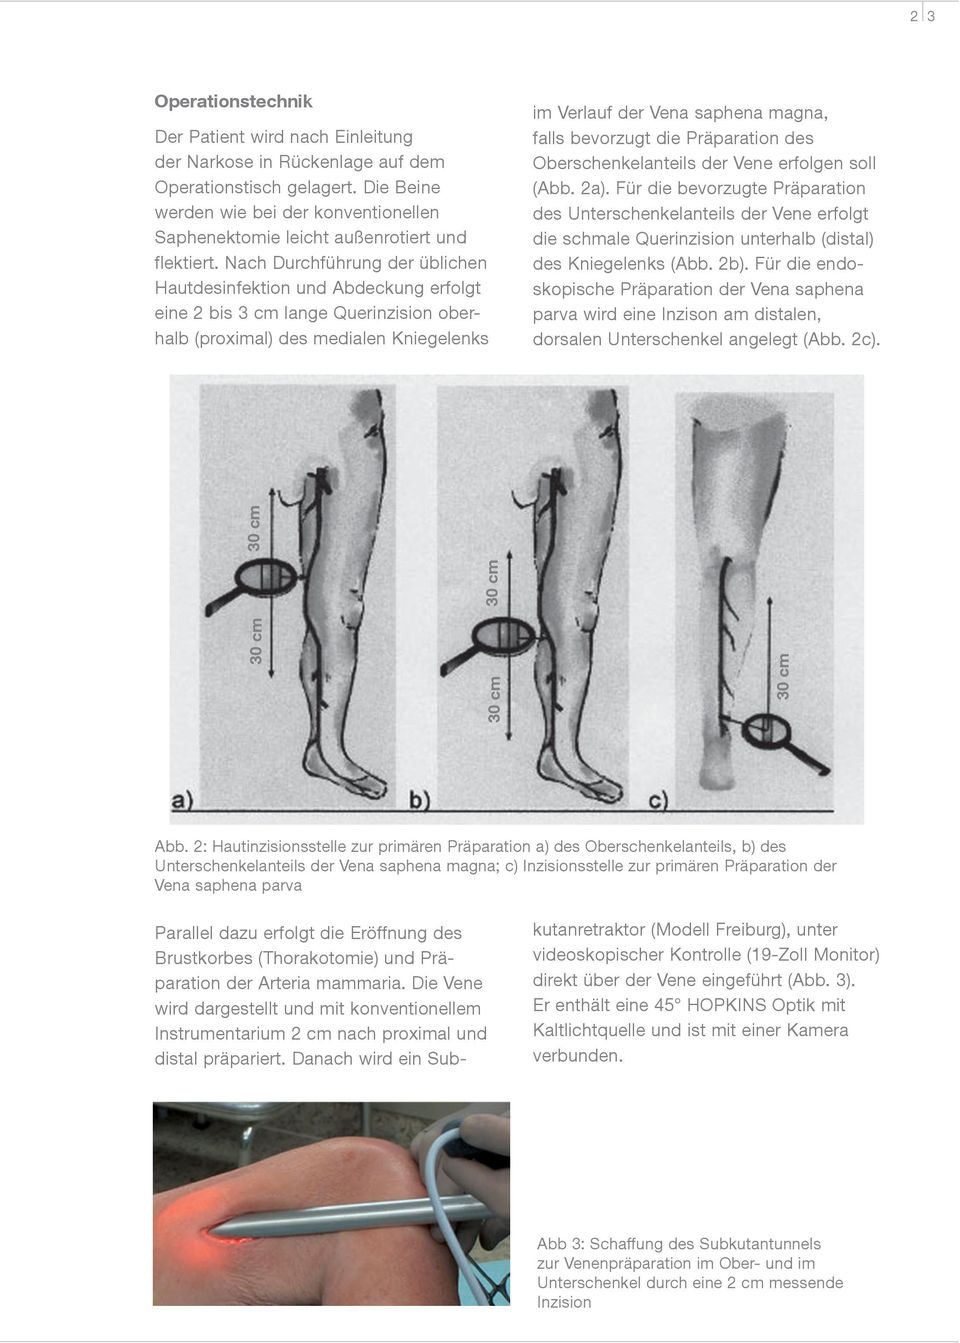 Nach Durchführung der üblichen Hautdesinfektion und Abdeckung erfolgt eine 2 bis 3 cm lange Querinzision oberhalb (proximal) des medialen Kniegelenks im Verlauf der Vena saphena magna, falls